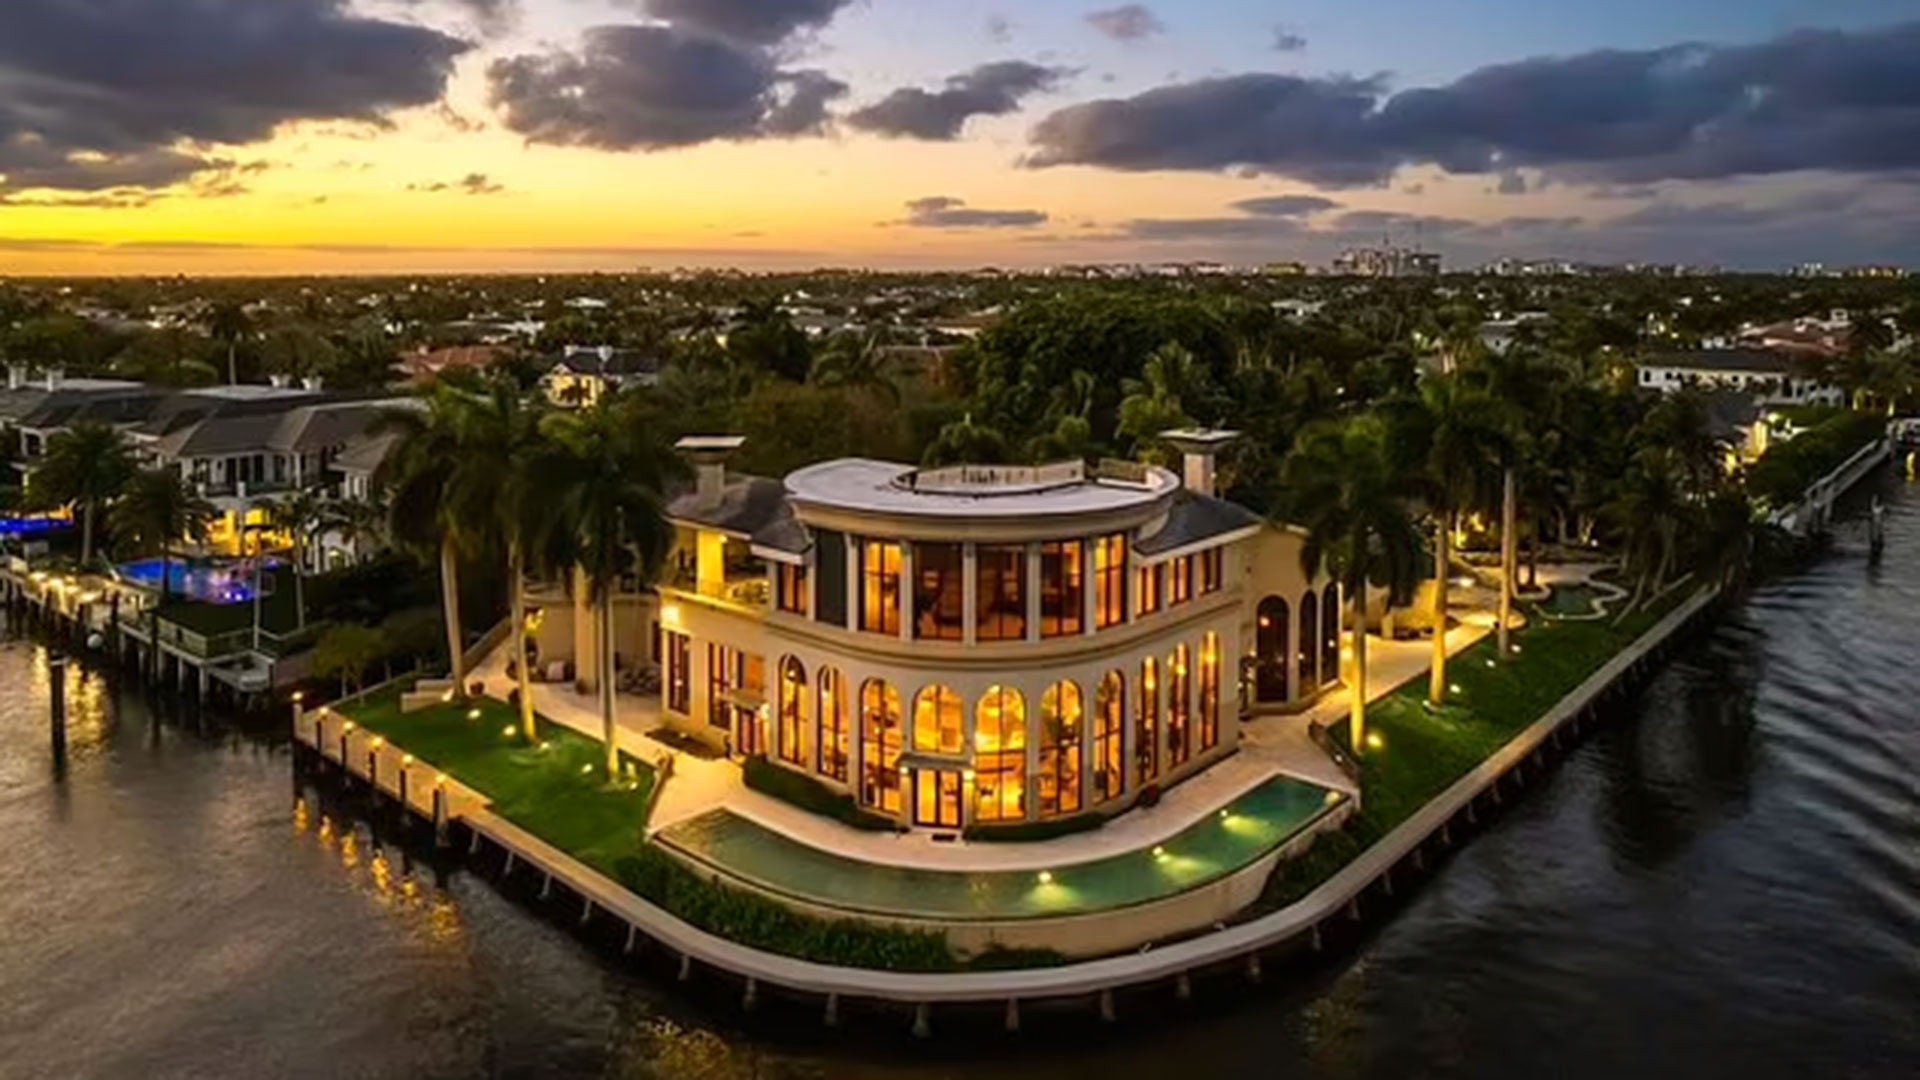 Una mansión de lujo en Florida alcanzó los 40 millones de dólares en venta antes de su demolición